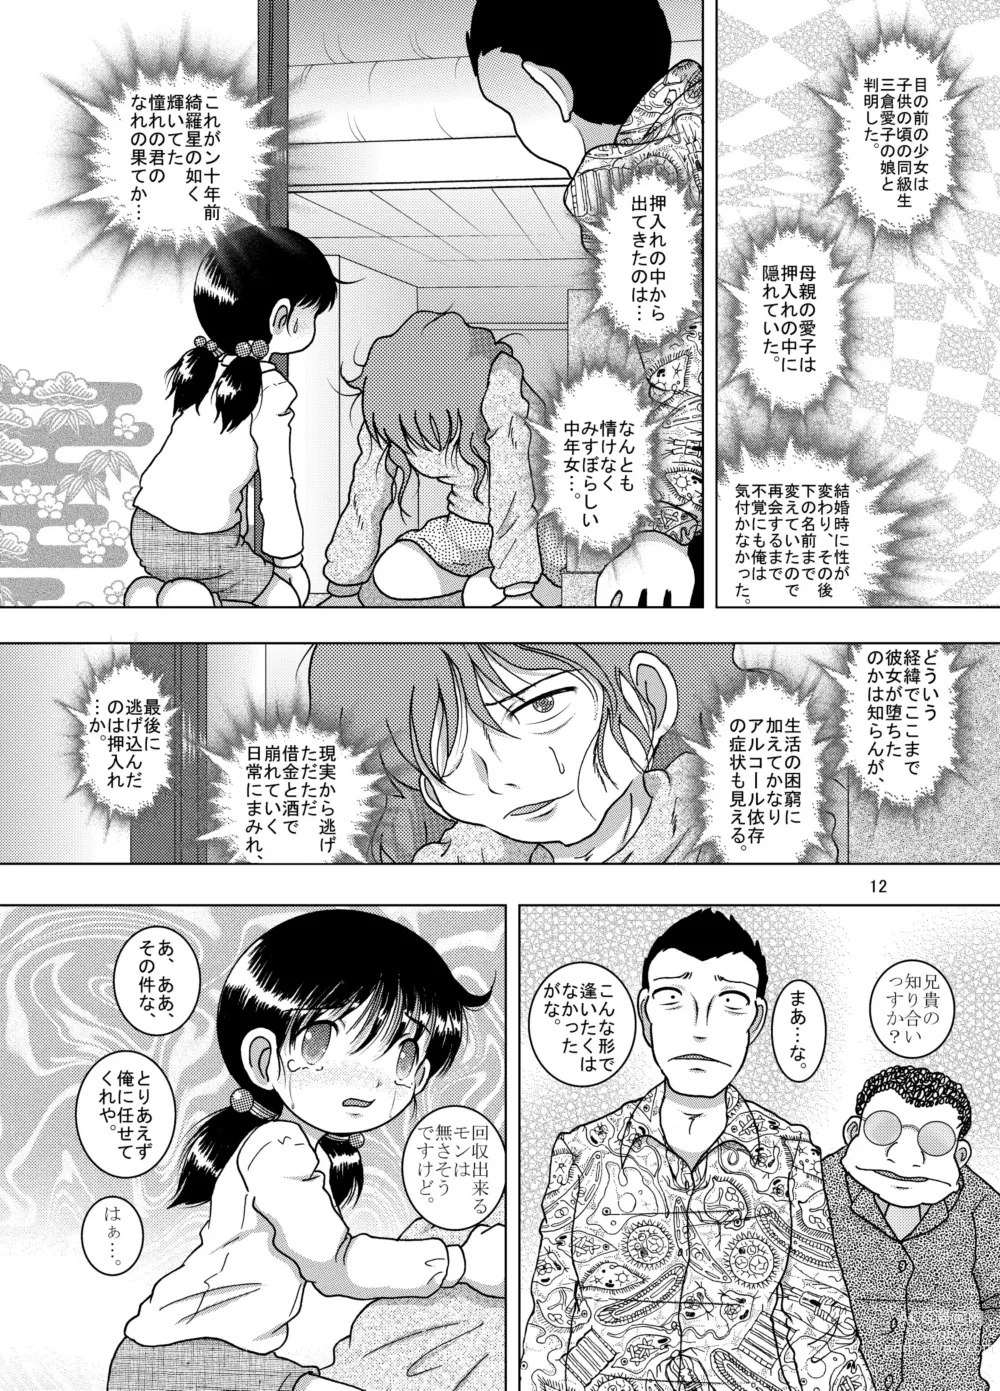 Page 12 of doujinshi Hoen Yokan